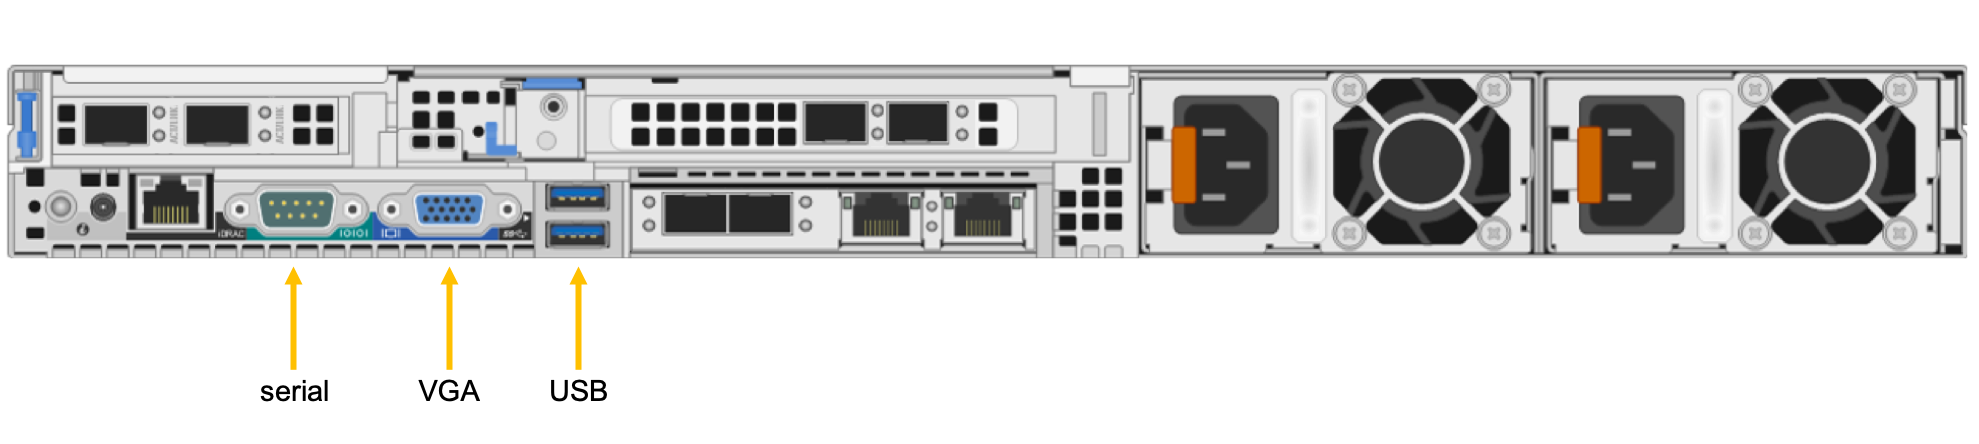 Diagrama de parte posterior de Azure FXT Edge Filer con los puertos serie, VGA y USB indicados